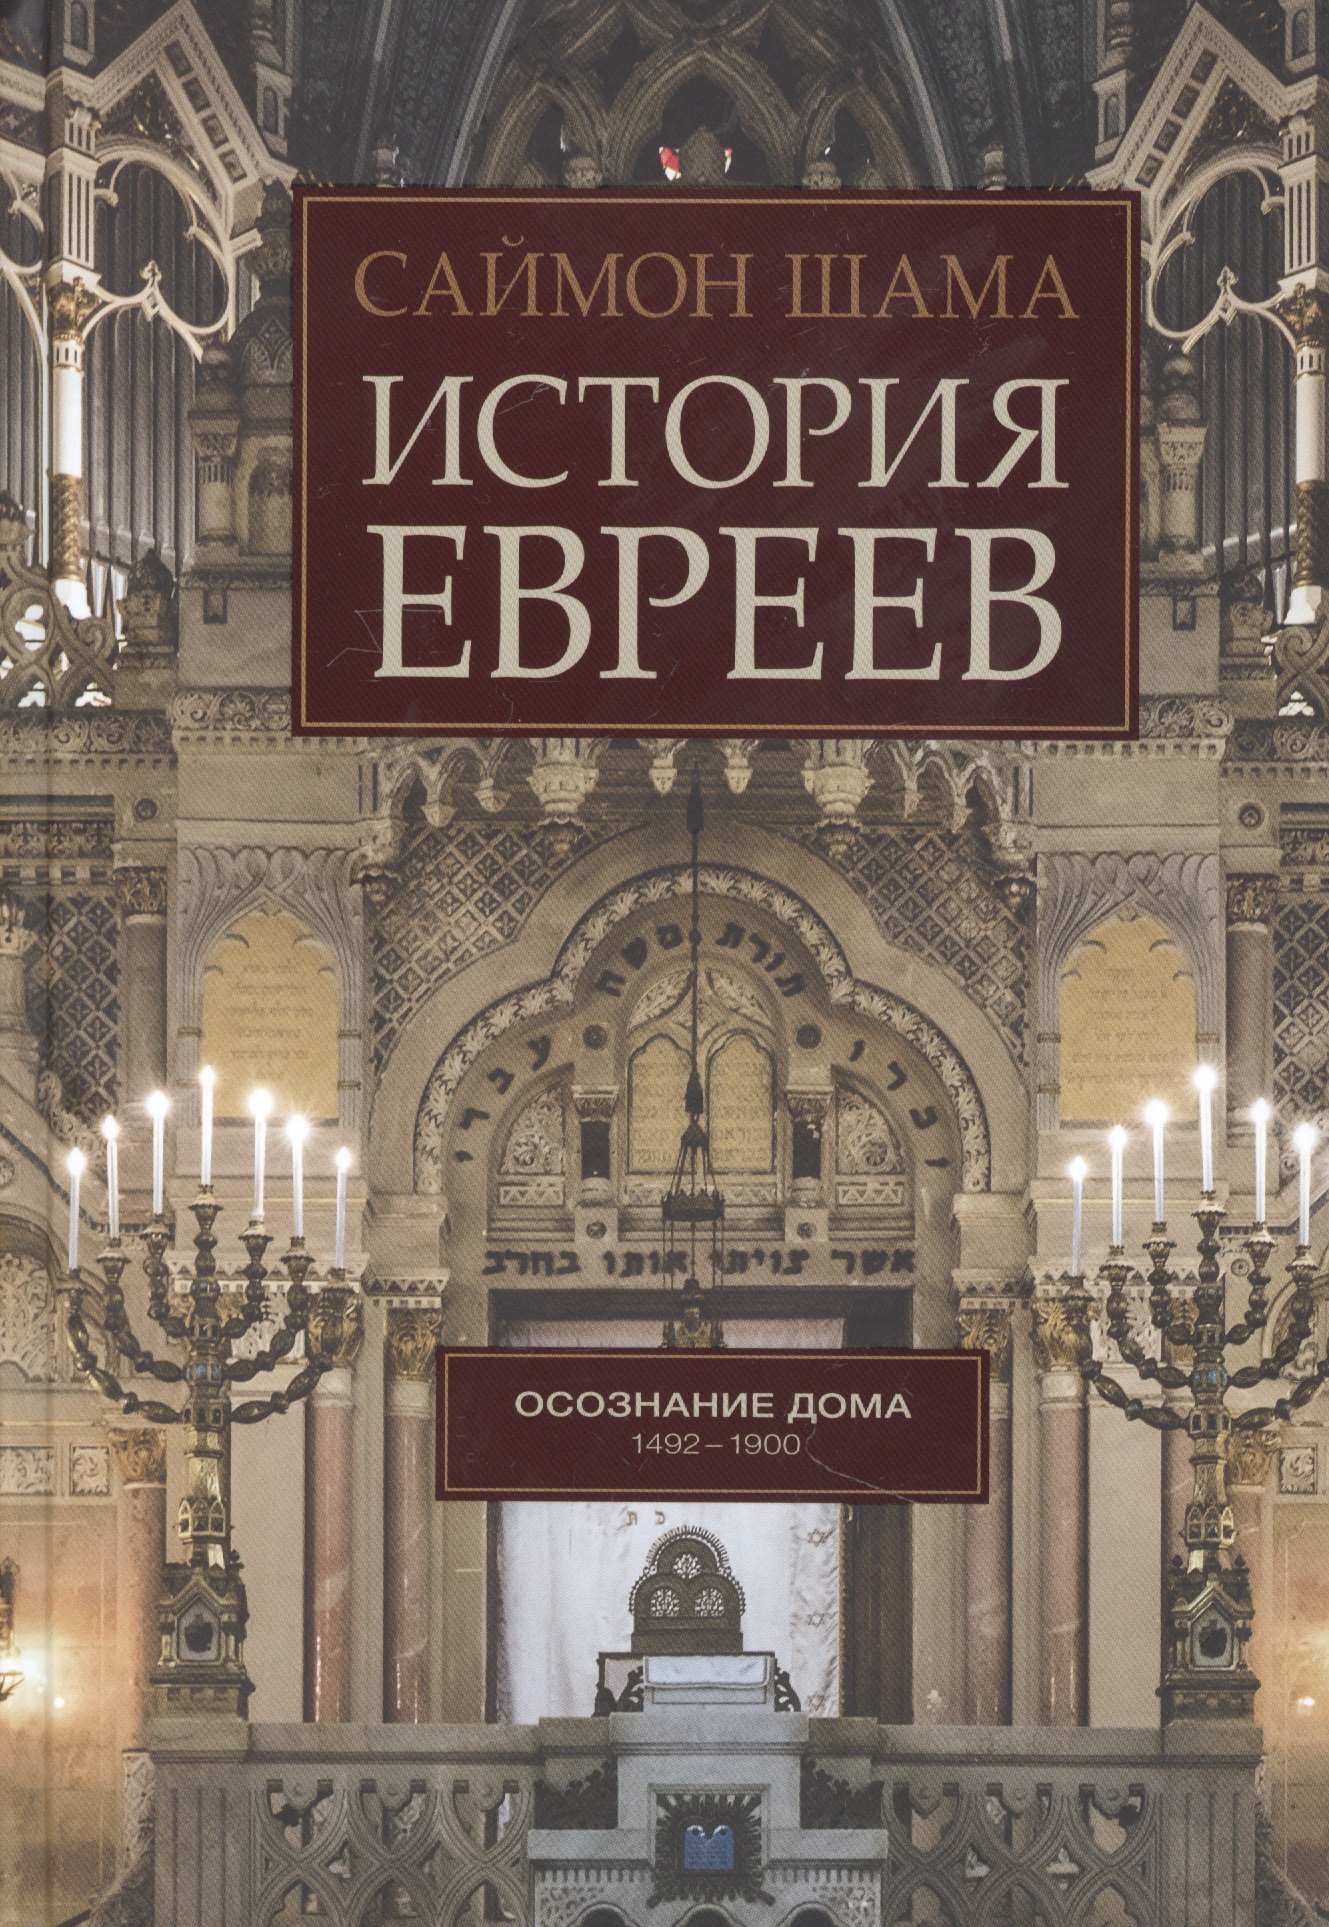 Шама Саймон История евреев. Осознание дома 1492-1900